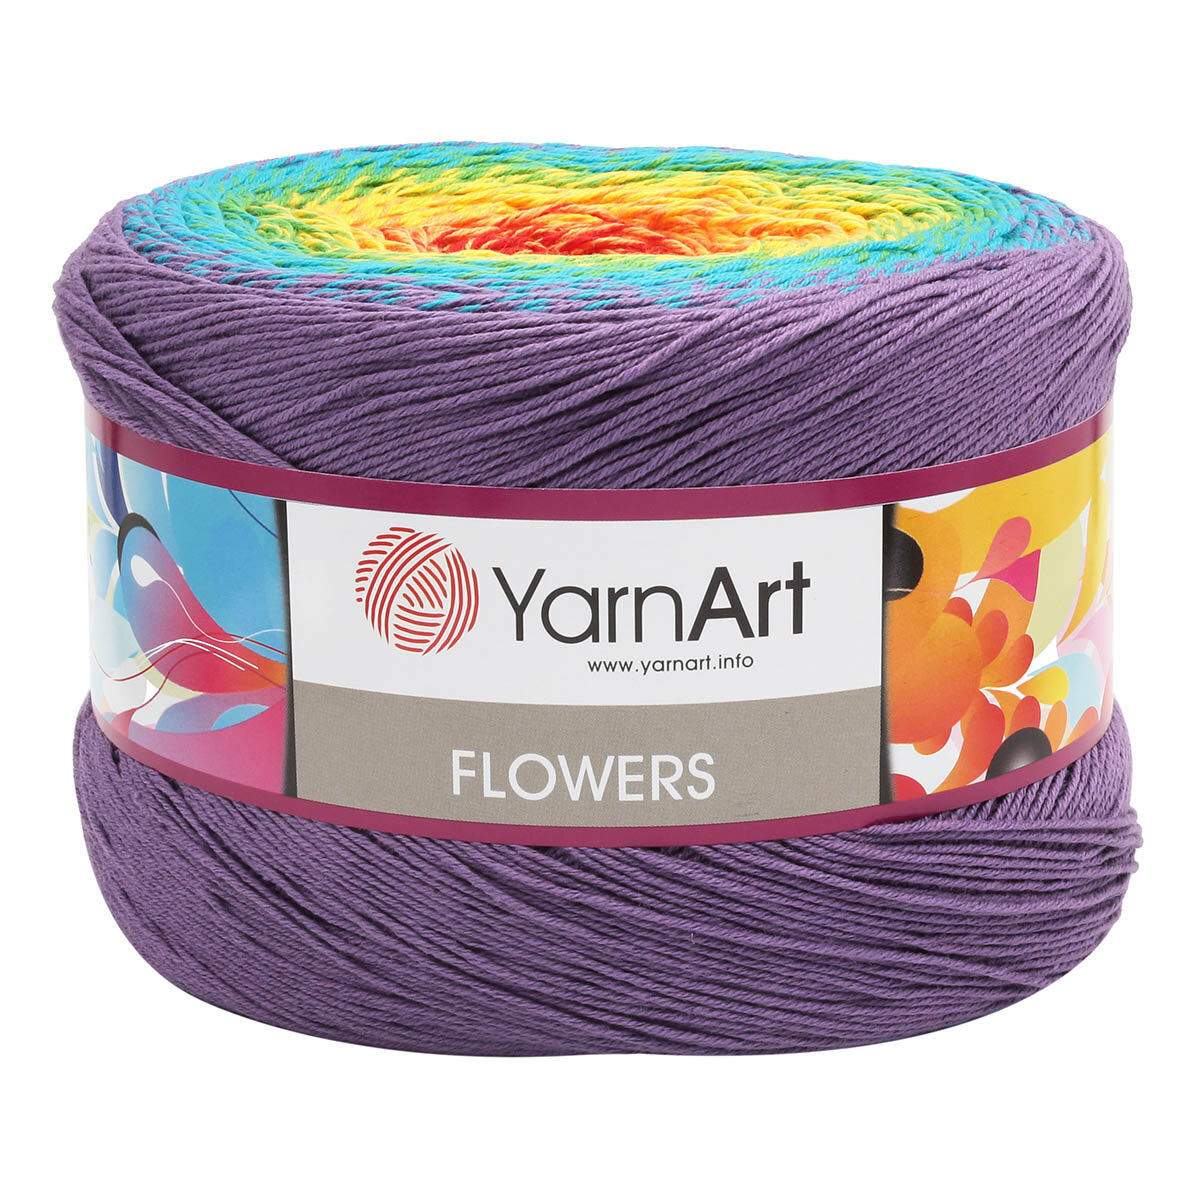 Пряжа для вязания YarnArt 'Flowers' 250гр 1000м (55% хлопок, 45% полиакрил) (277 секционный), 2 мотка